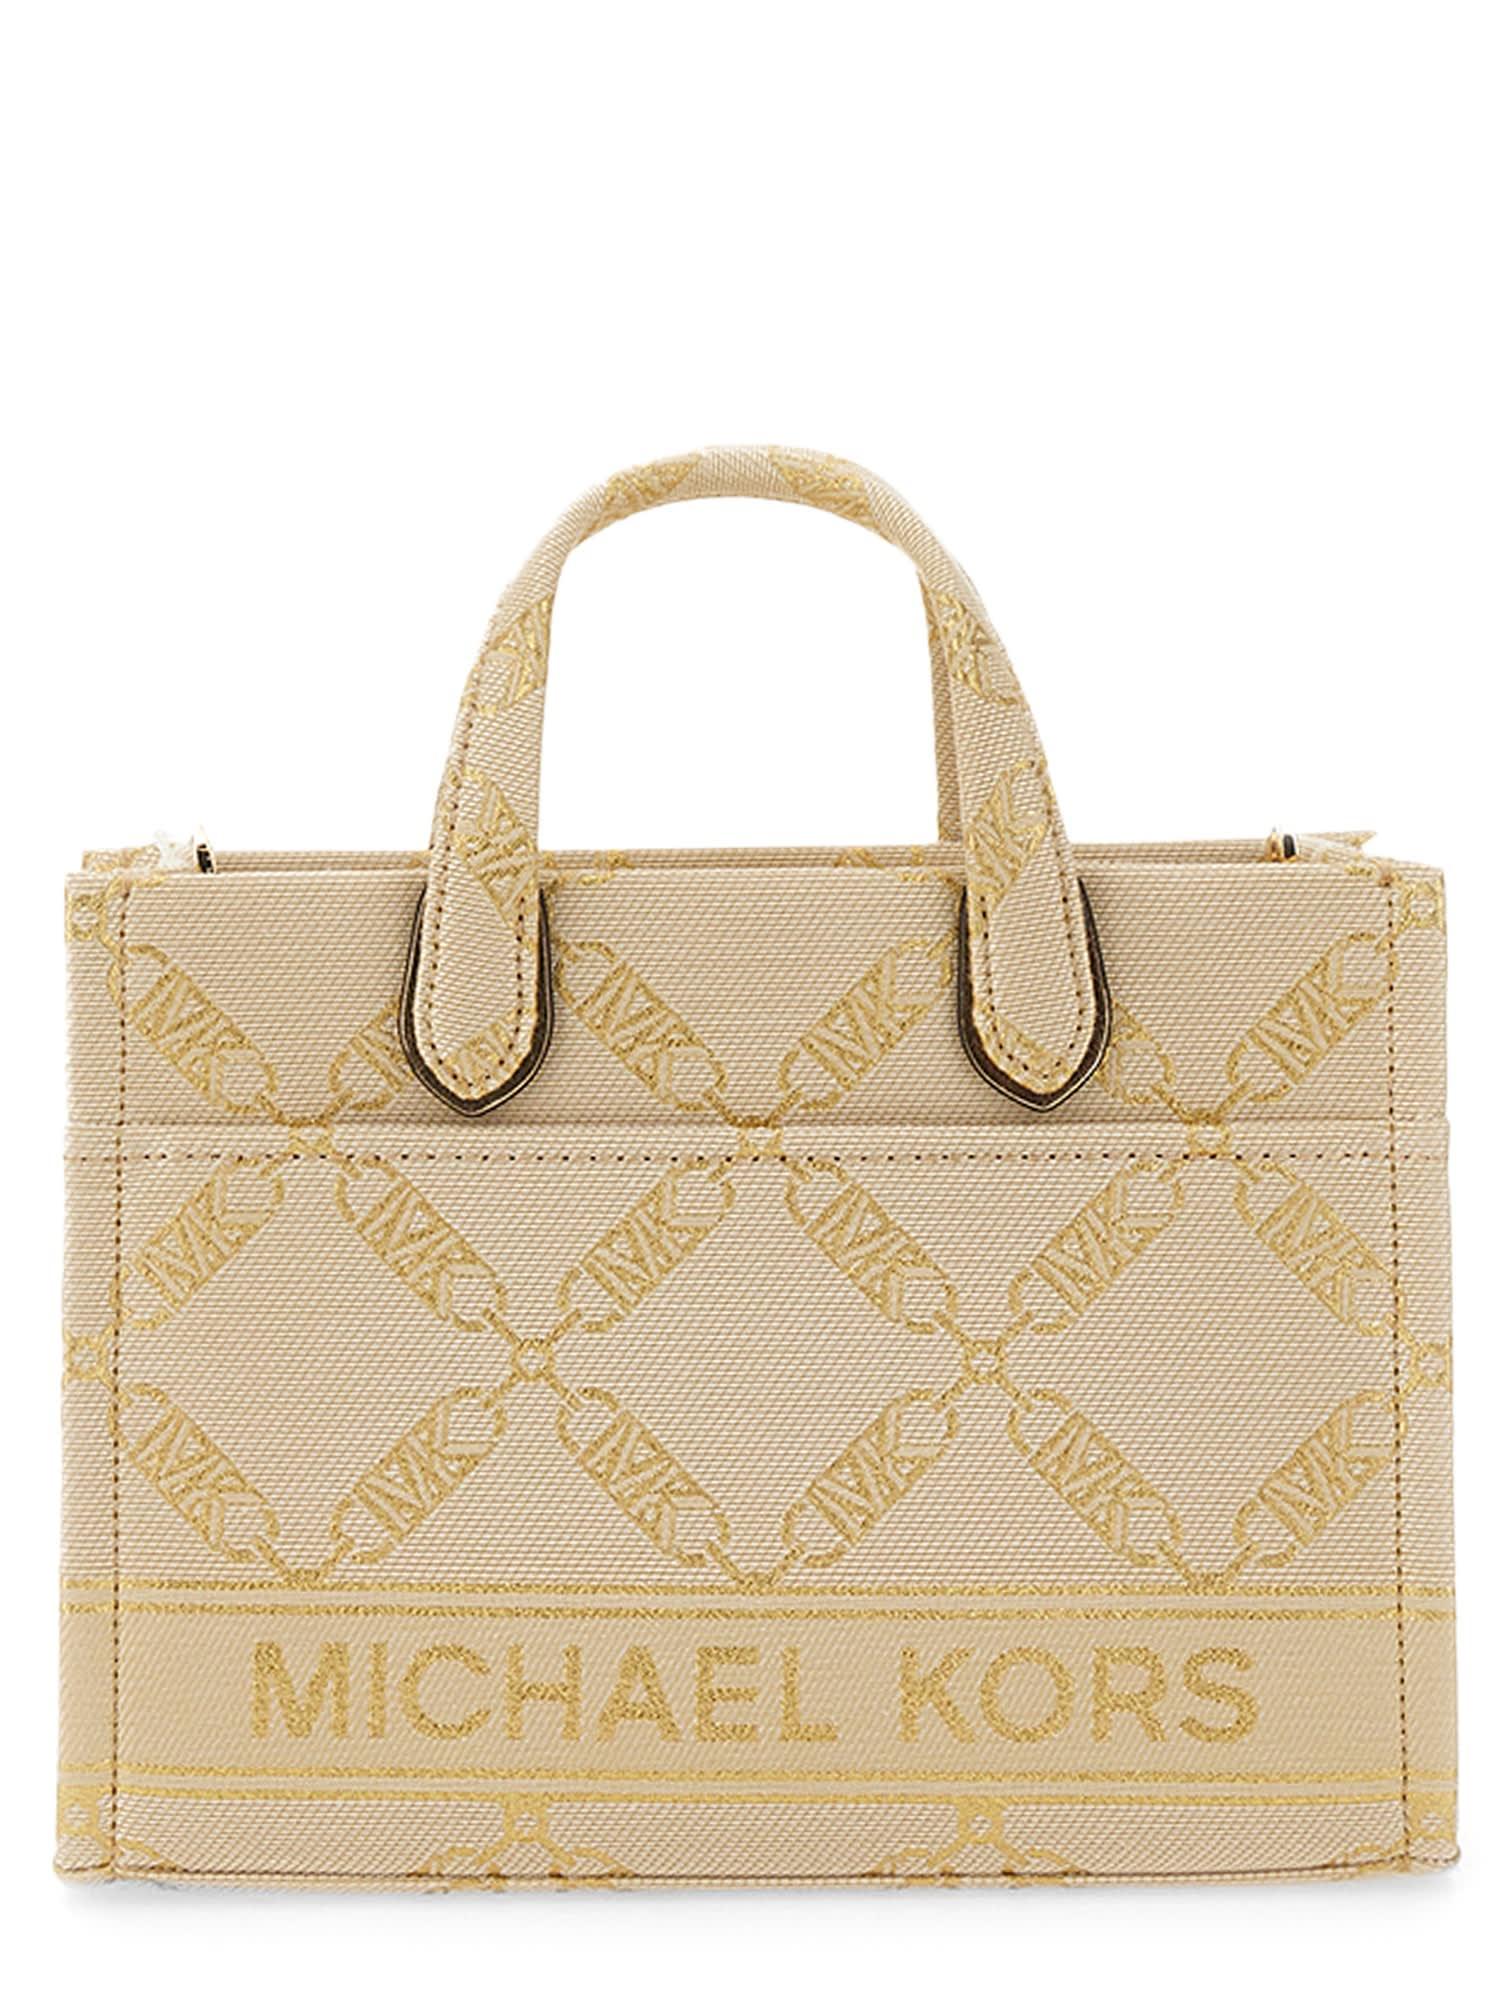 MICHAEL Michael Kors Gigi Small Bag in Natural | Lyst